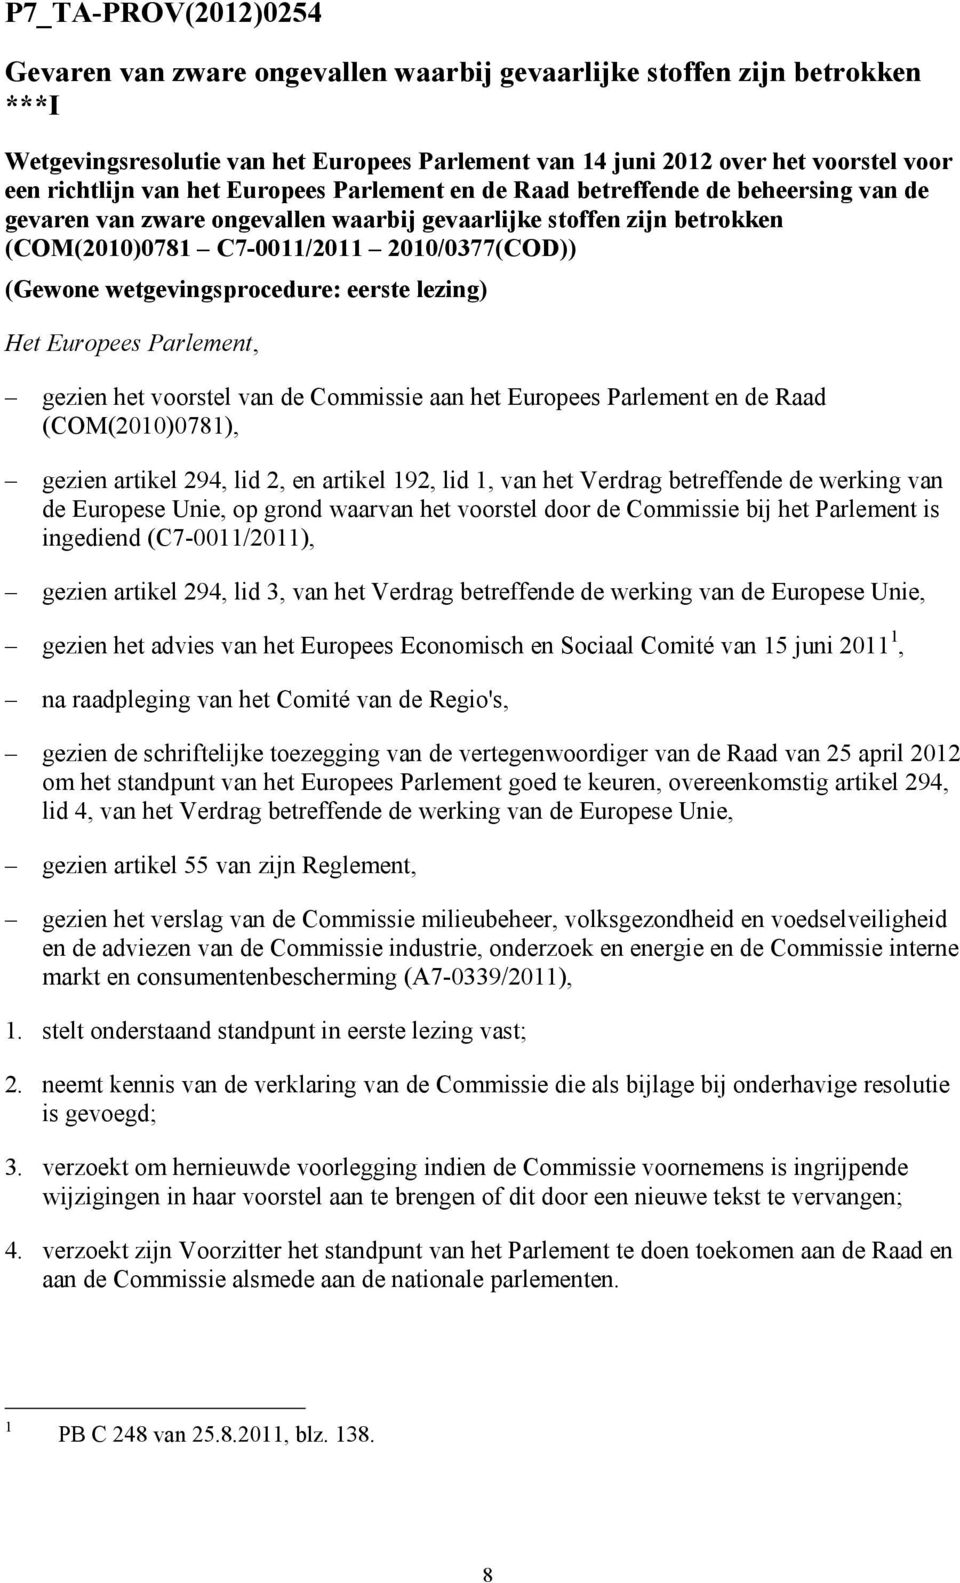 wetgevingsprocedure: eerste lezing) Het Europees Parlement, gezien het voorstel van de Commissie aan het Europees Parlement en de Raad (COM(2010)0781), gezien artikel 294, lid 2, en artikel 192, lid